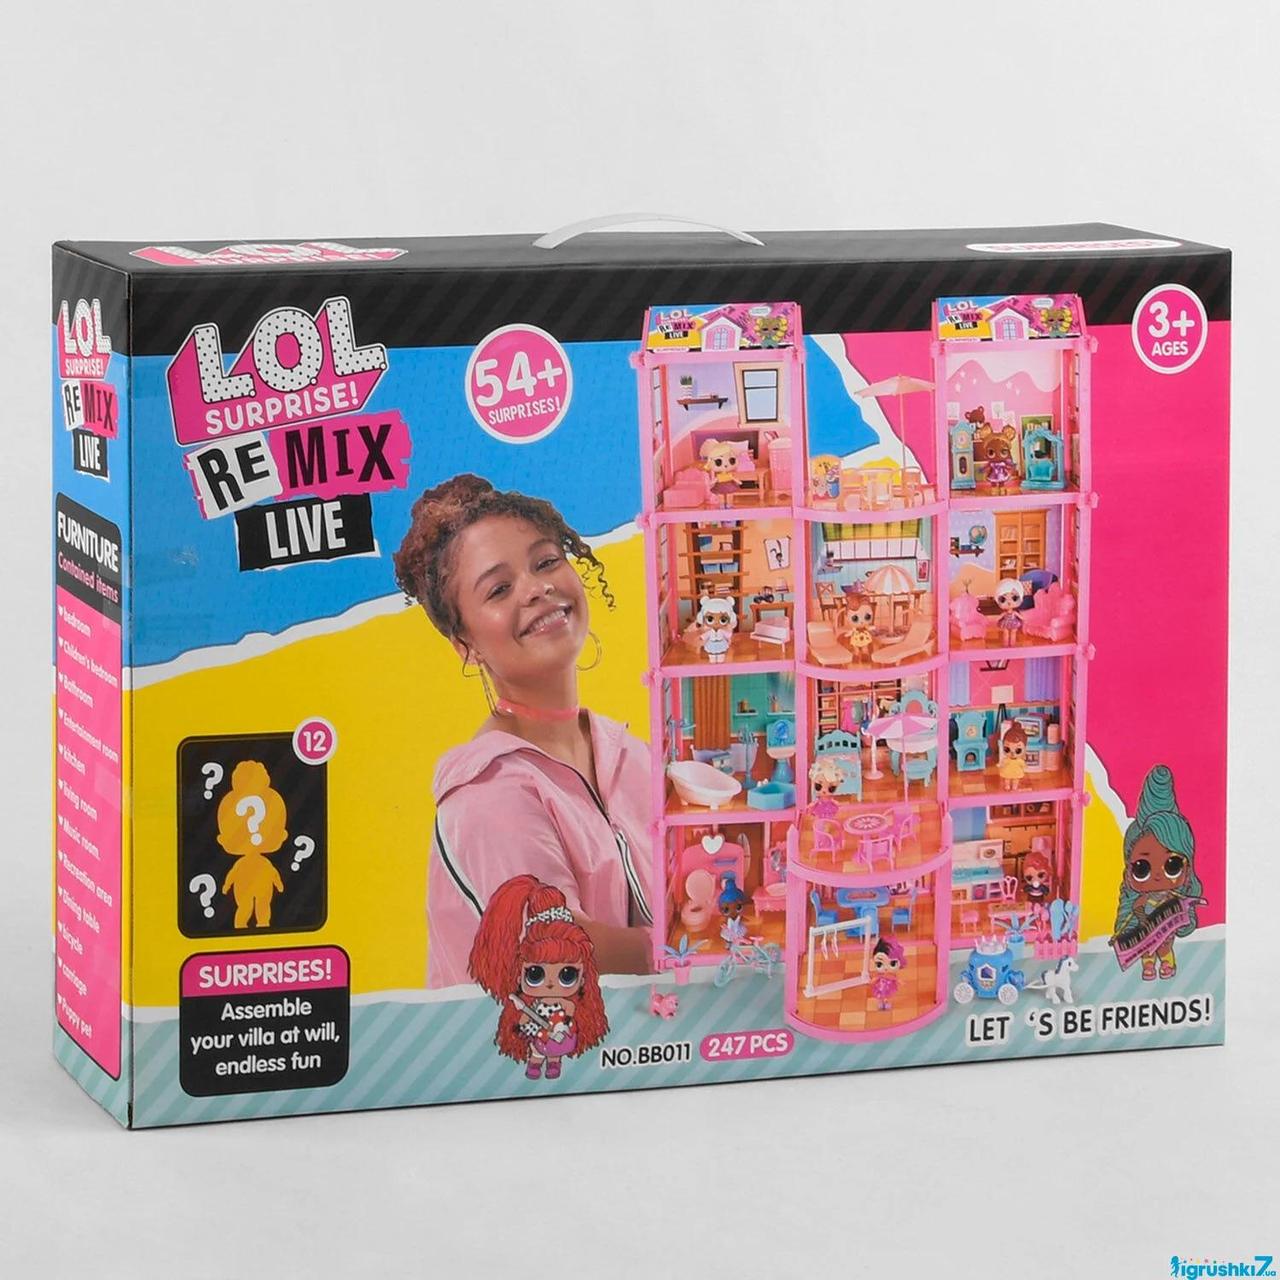 

ДОМ LOL для кукол арт ВВ 015 3 этажа, 176 элементов, 8 кукол, питомец, мебель, в коробке